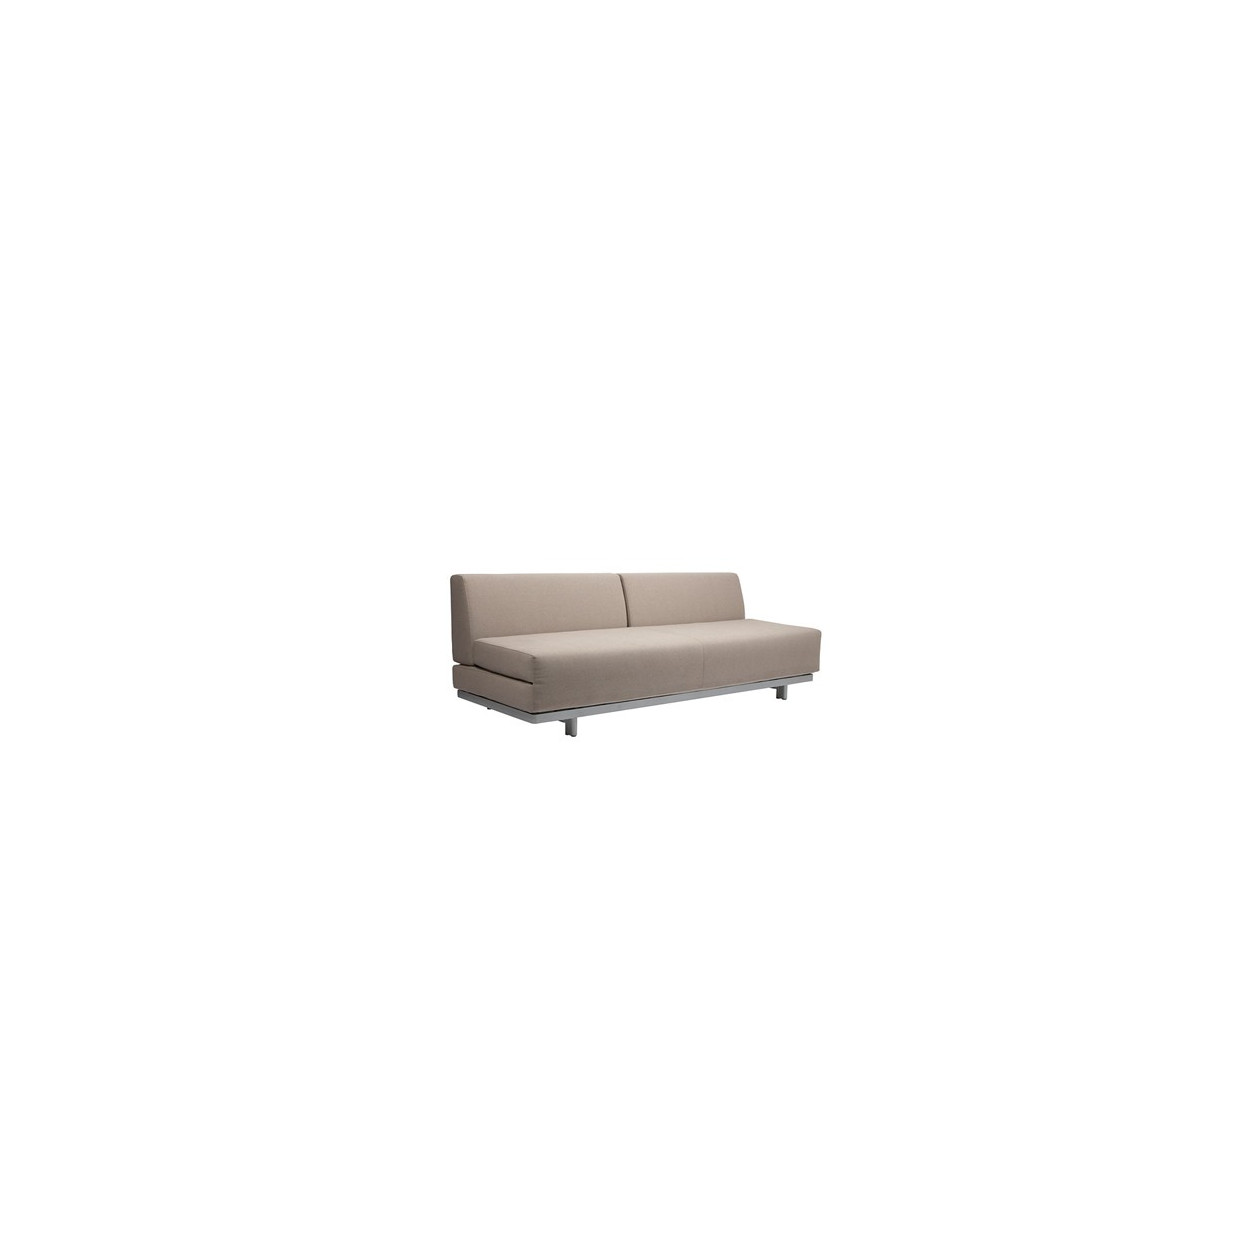 Beżowa, rozkładana sofa T2 w pokryciu z bawełny